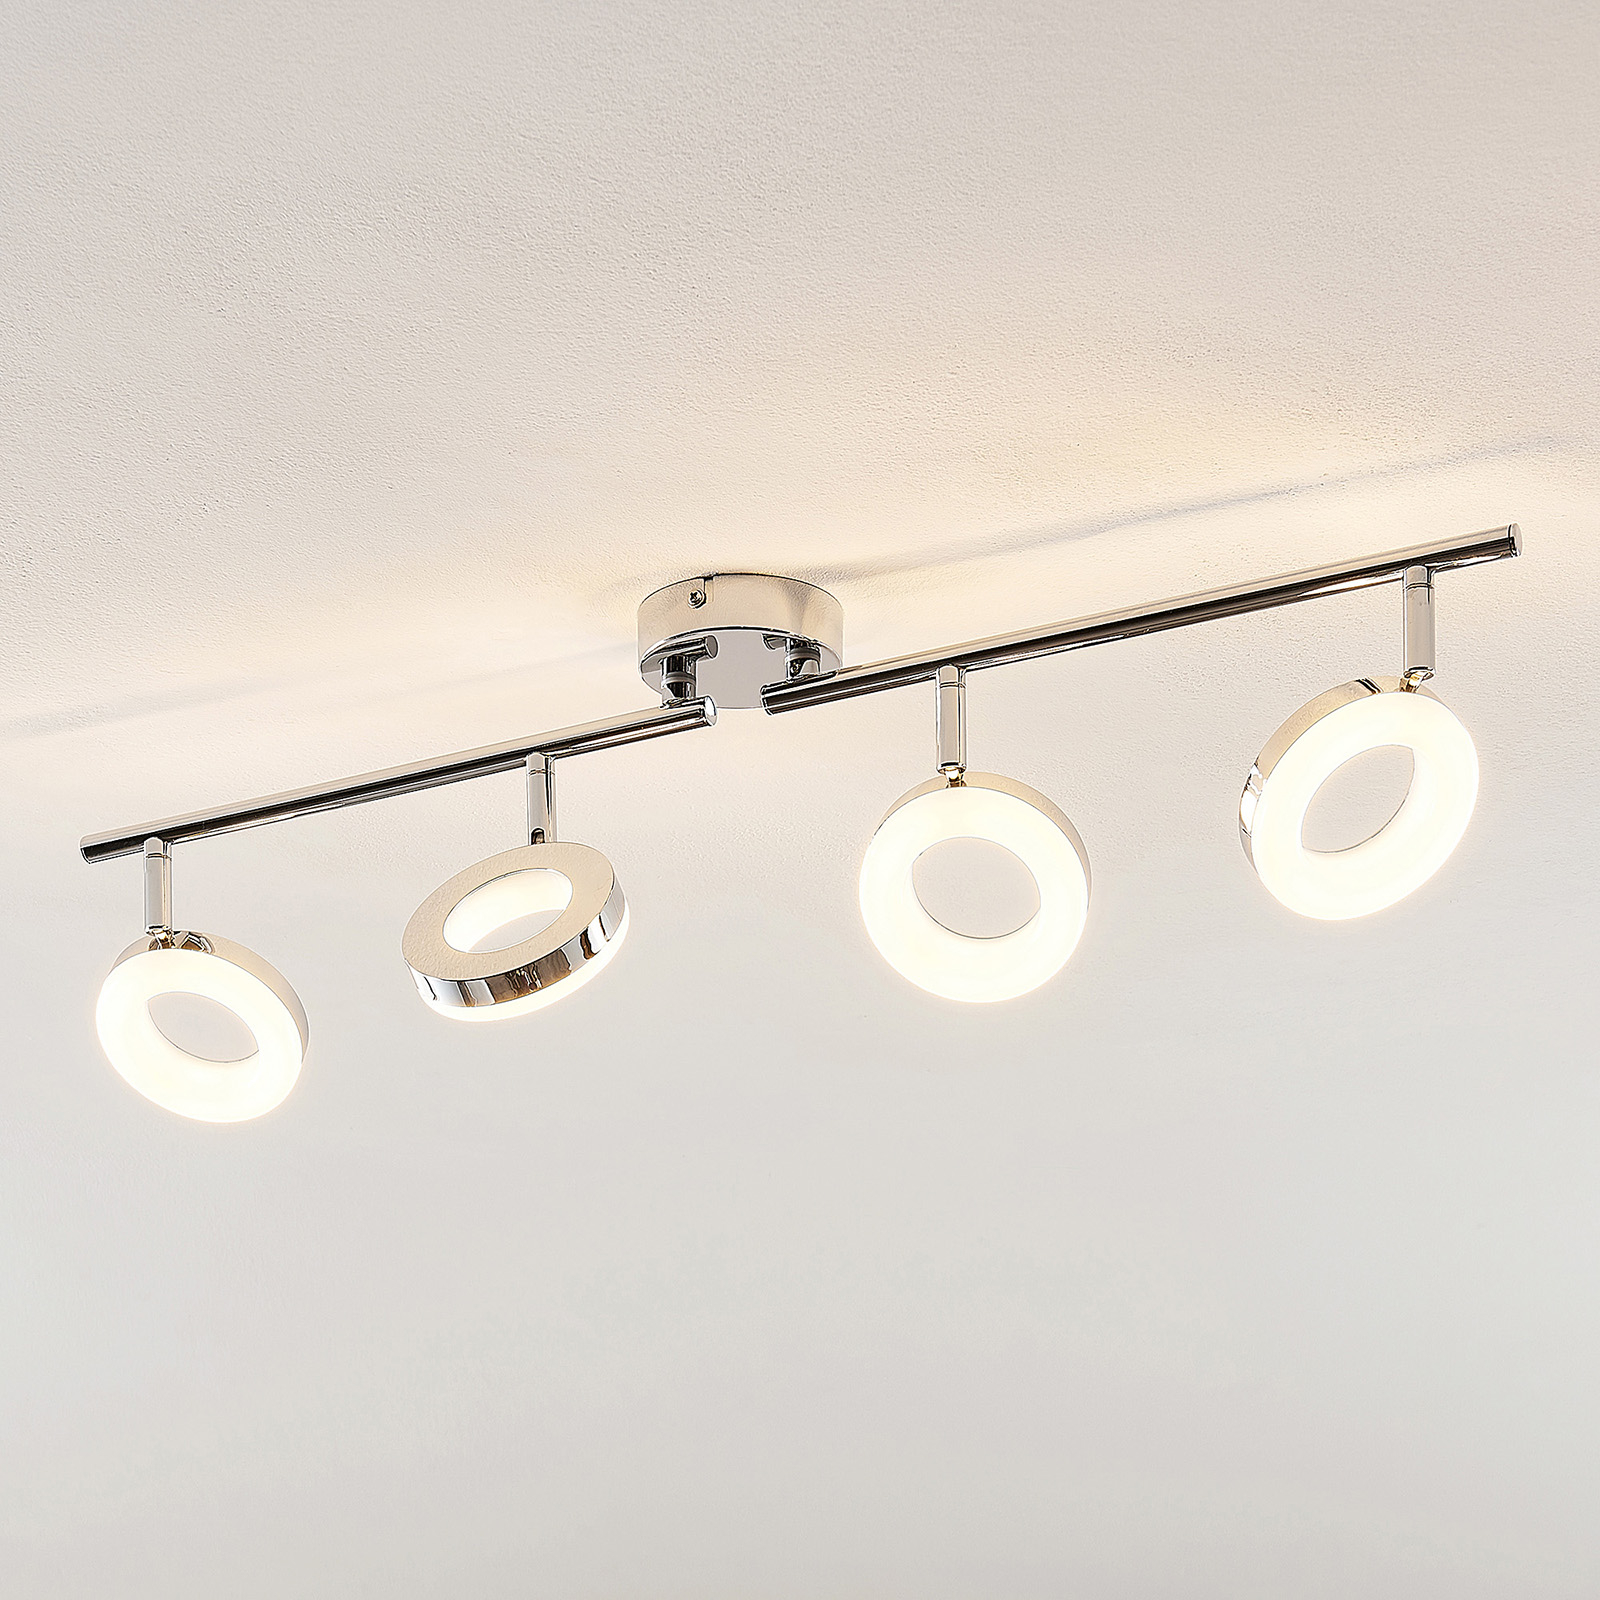 ELC Tioklia LED stropní světlo, chrom, čtyřžárov.